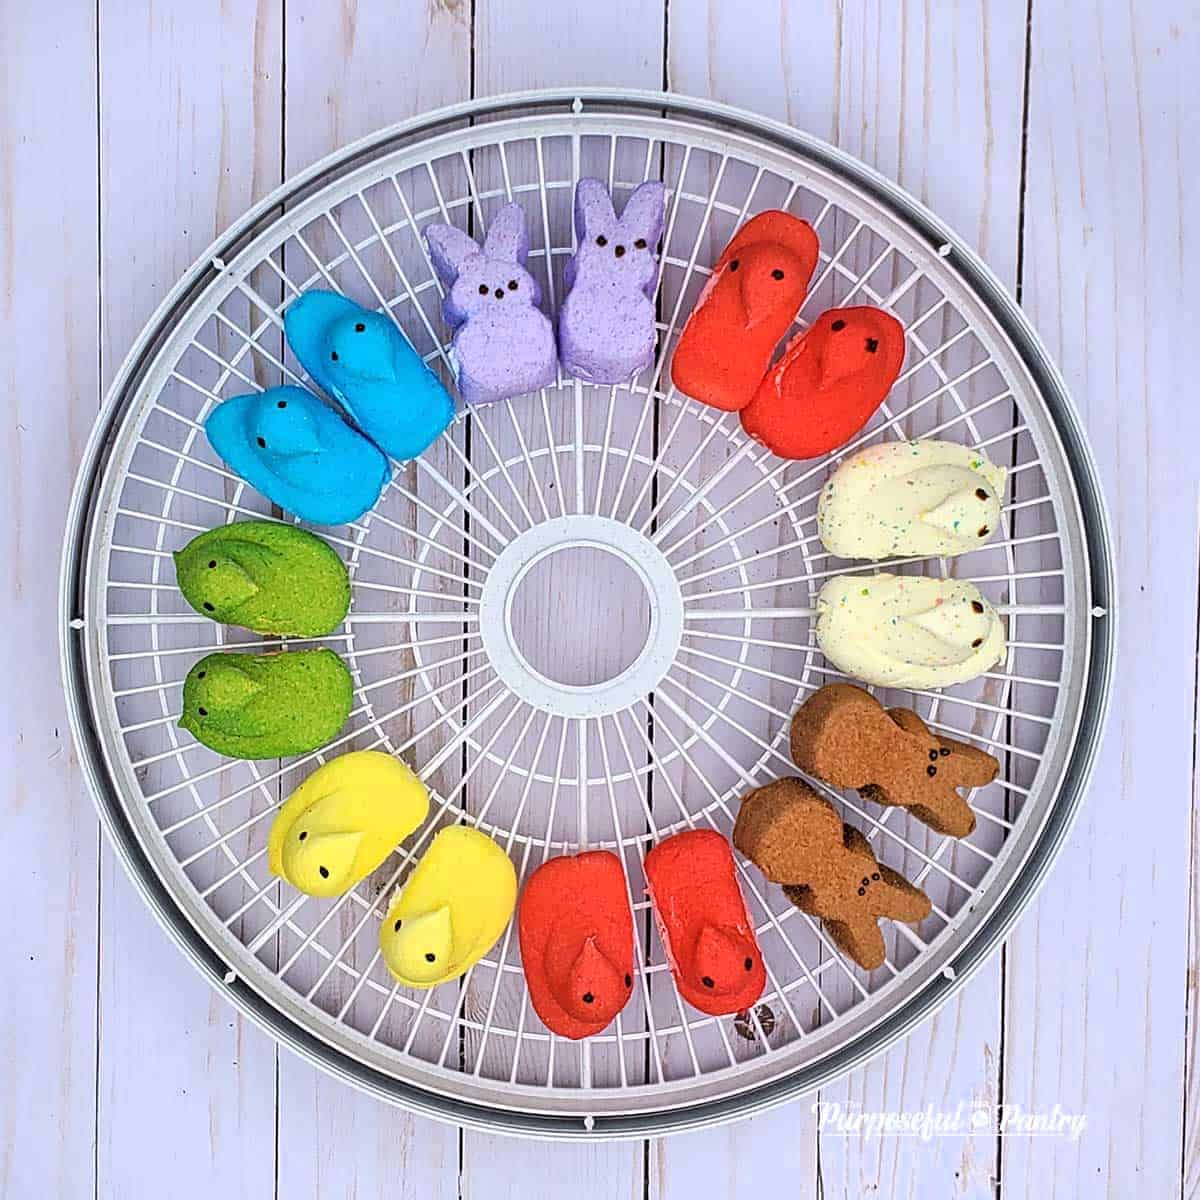 Marshmallow Peeps in rainbow order around a Nesco dehydrator tray